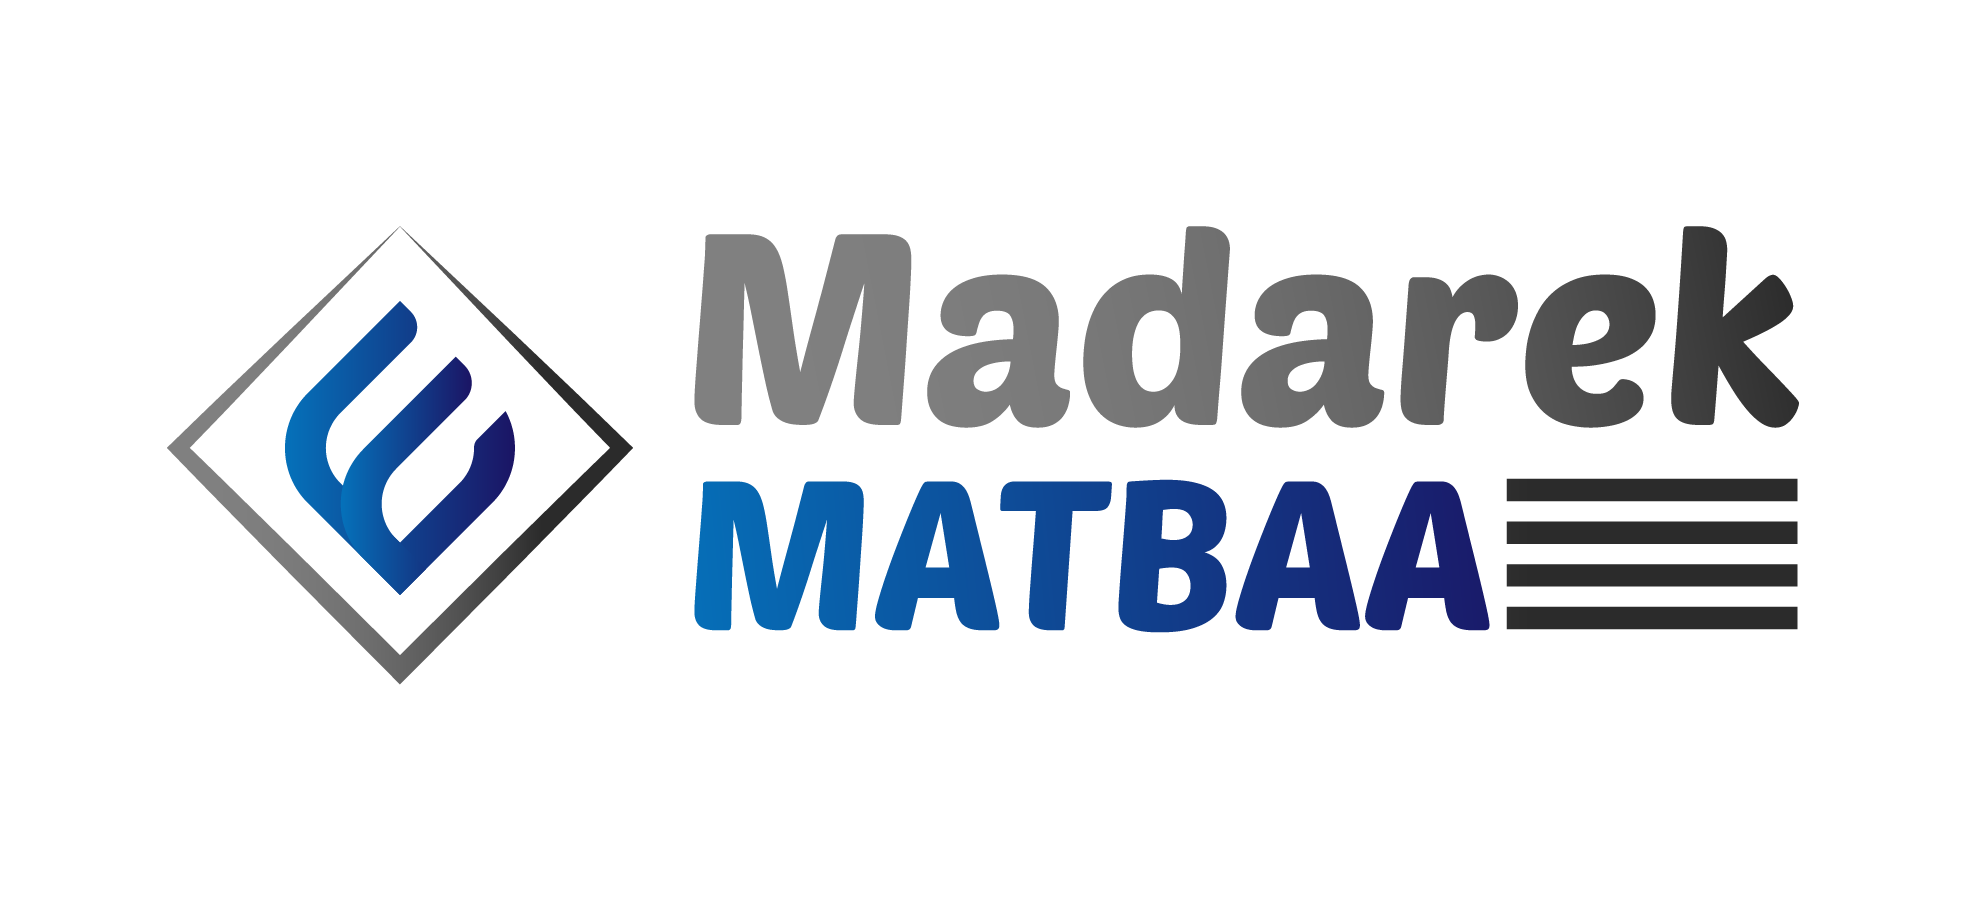 مطبعة مدارك - Madarek Matbaa